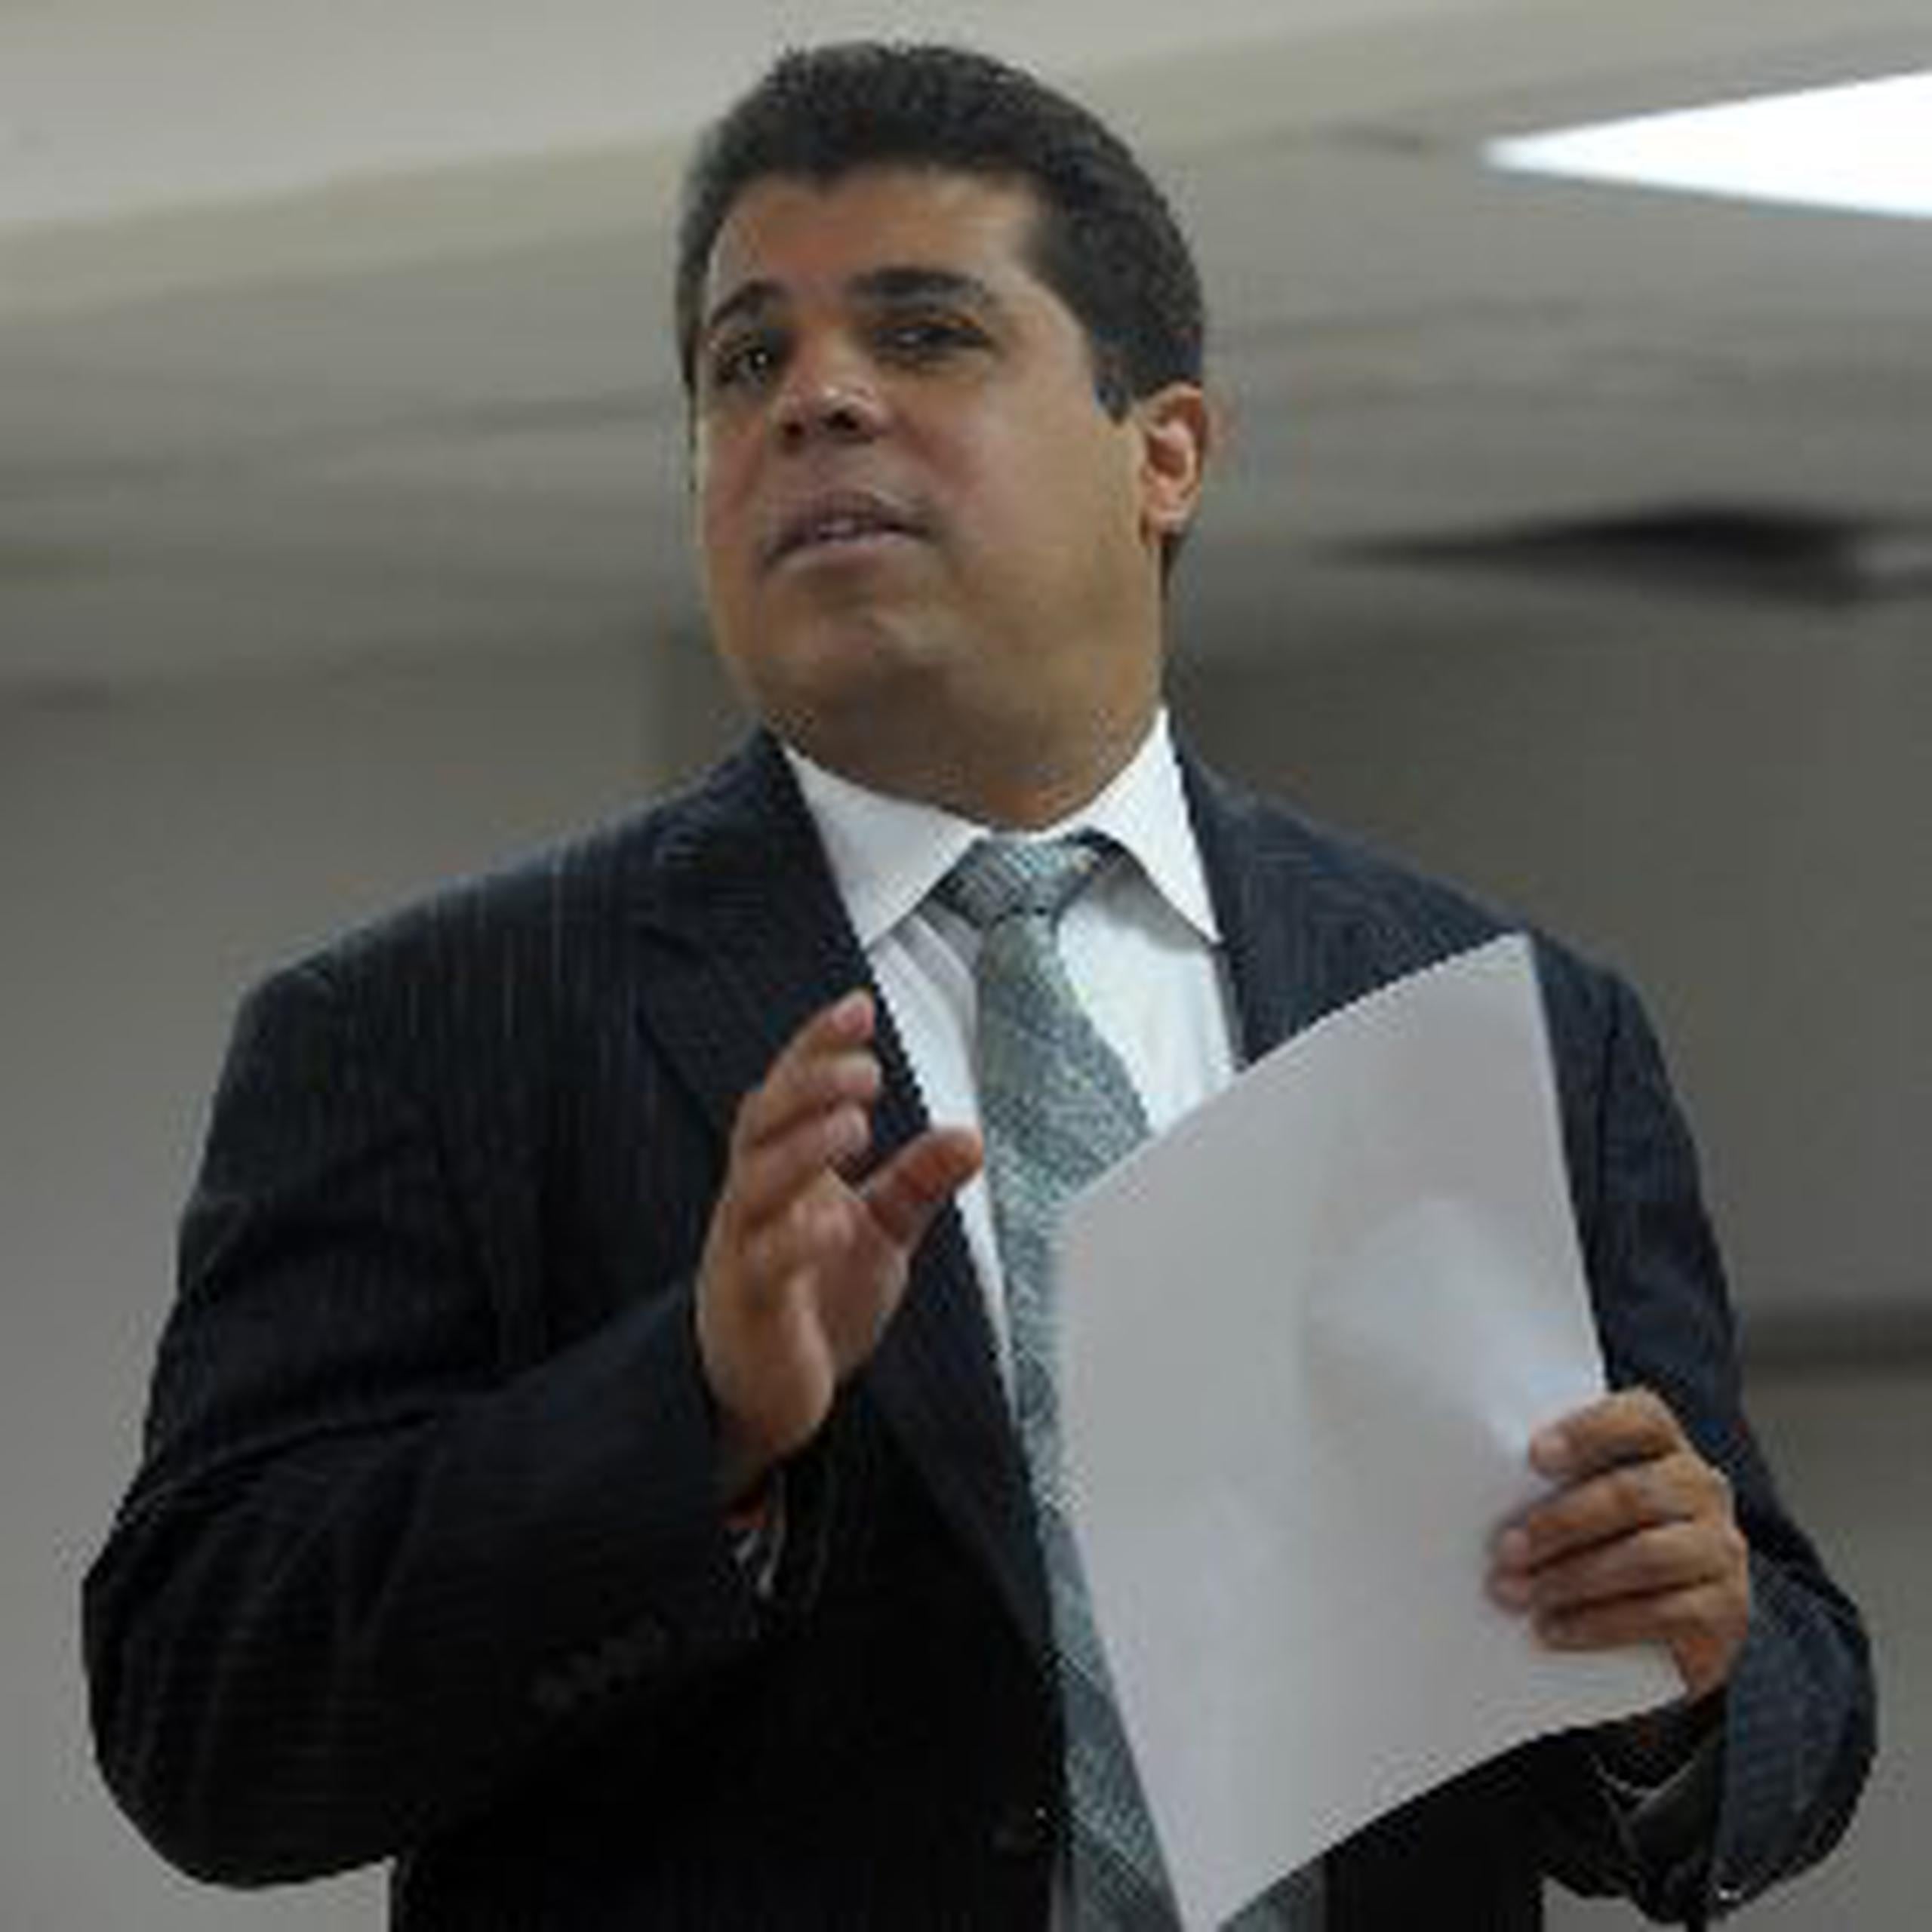  Luis Vega Ramos fue el portavoz de la minoría que llevó la voz cantante en la Comisión de Hacienda, pero no fue escogido para presidir la Cámara de Representantes.&nbsp;<font color="yellow">(juan.martinez@gfrmedia.com)</font>